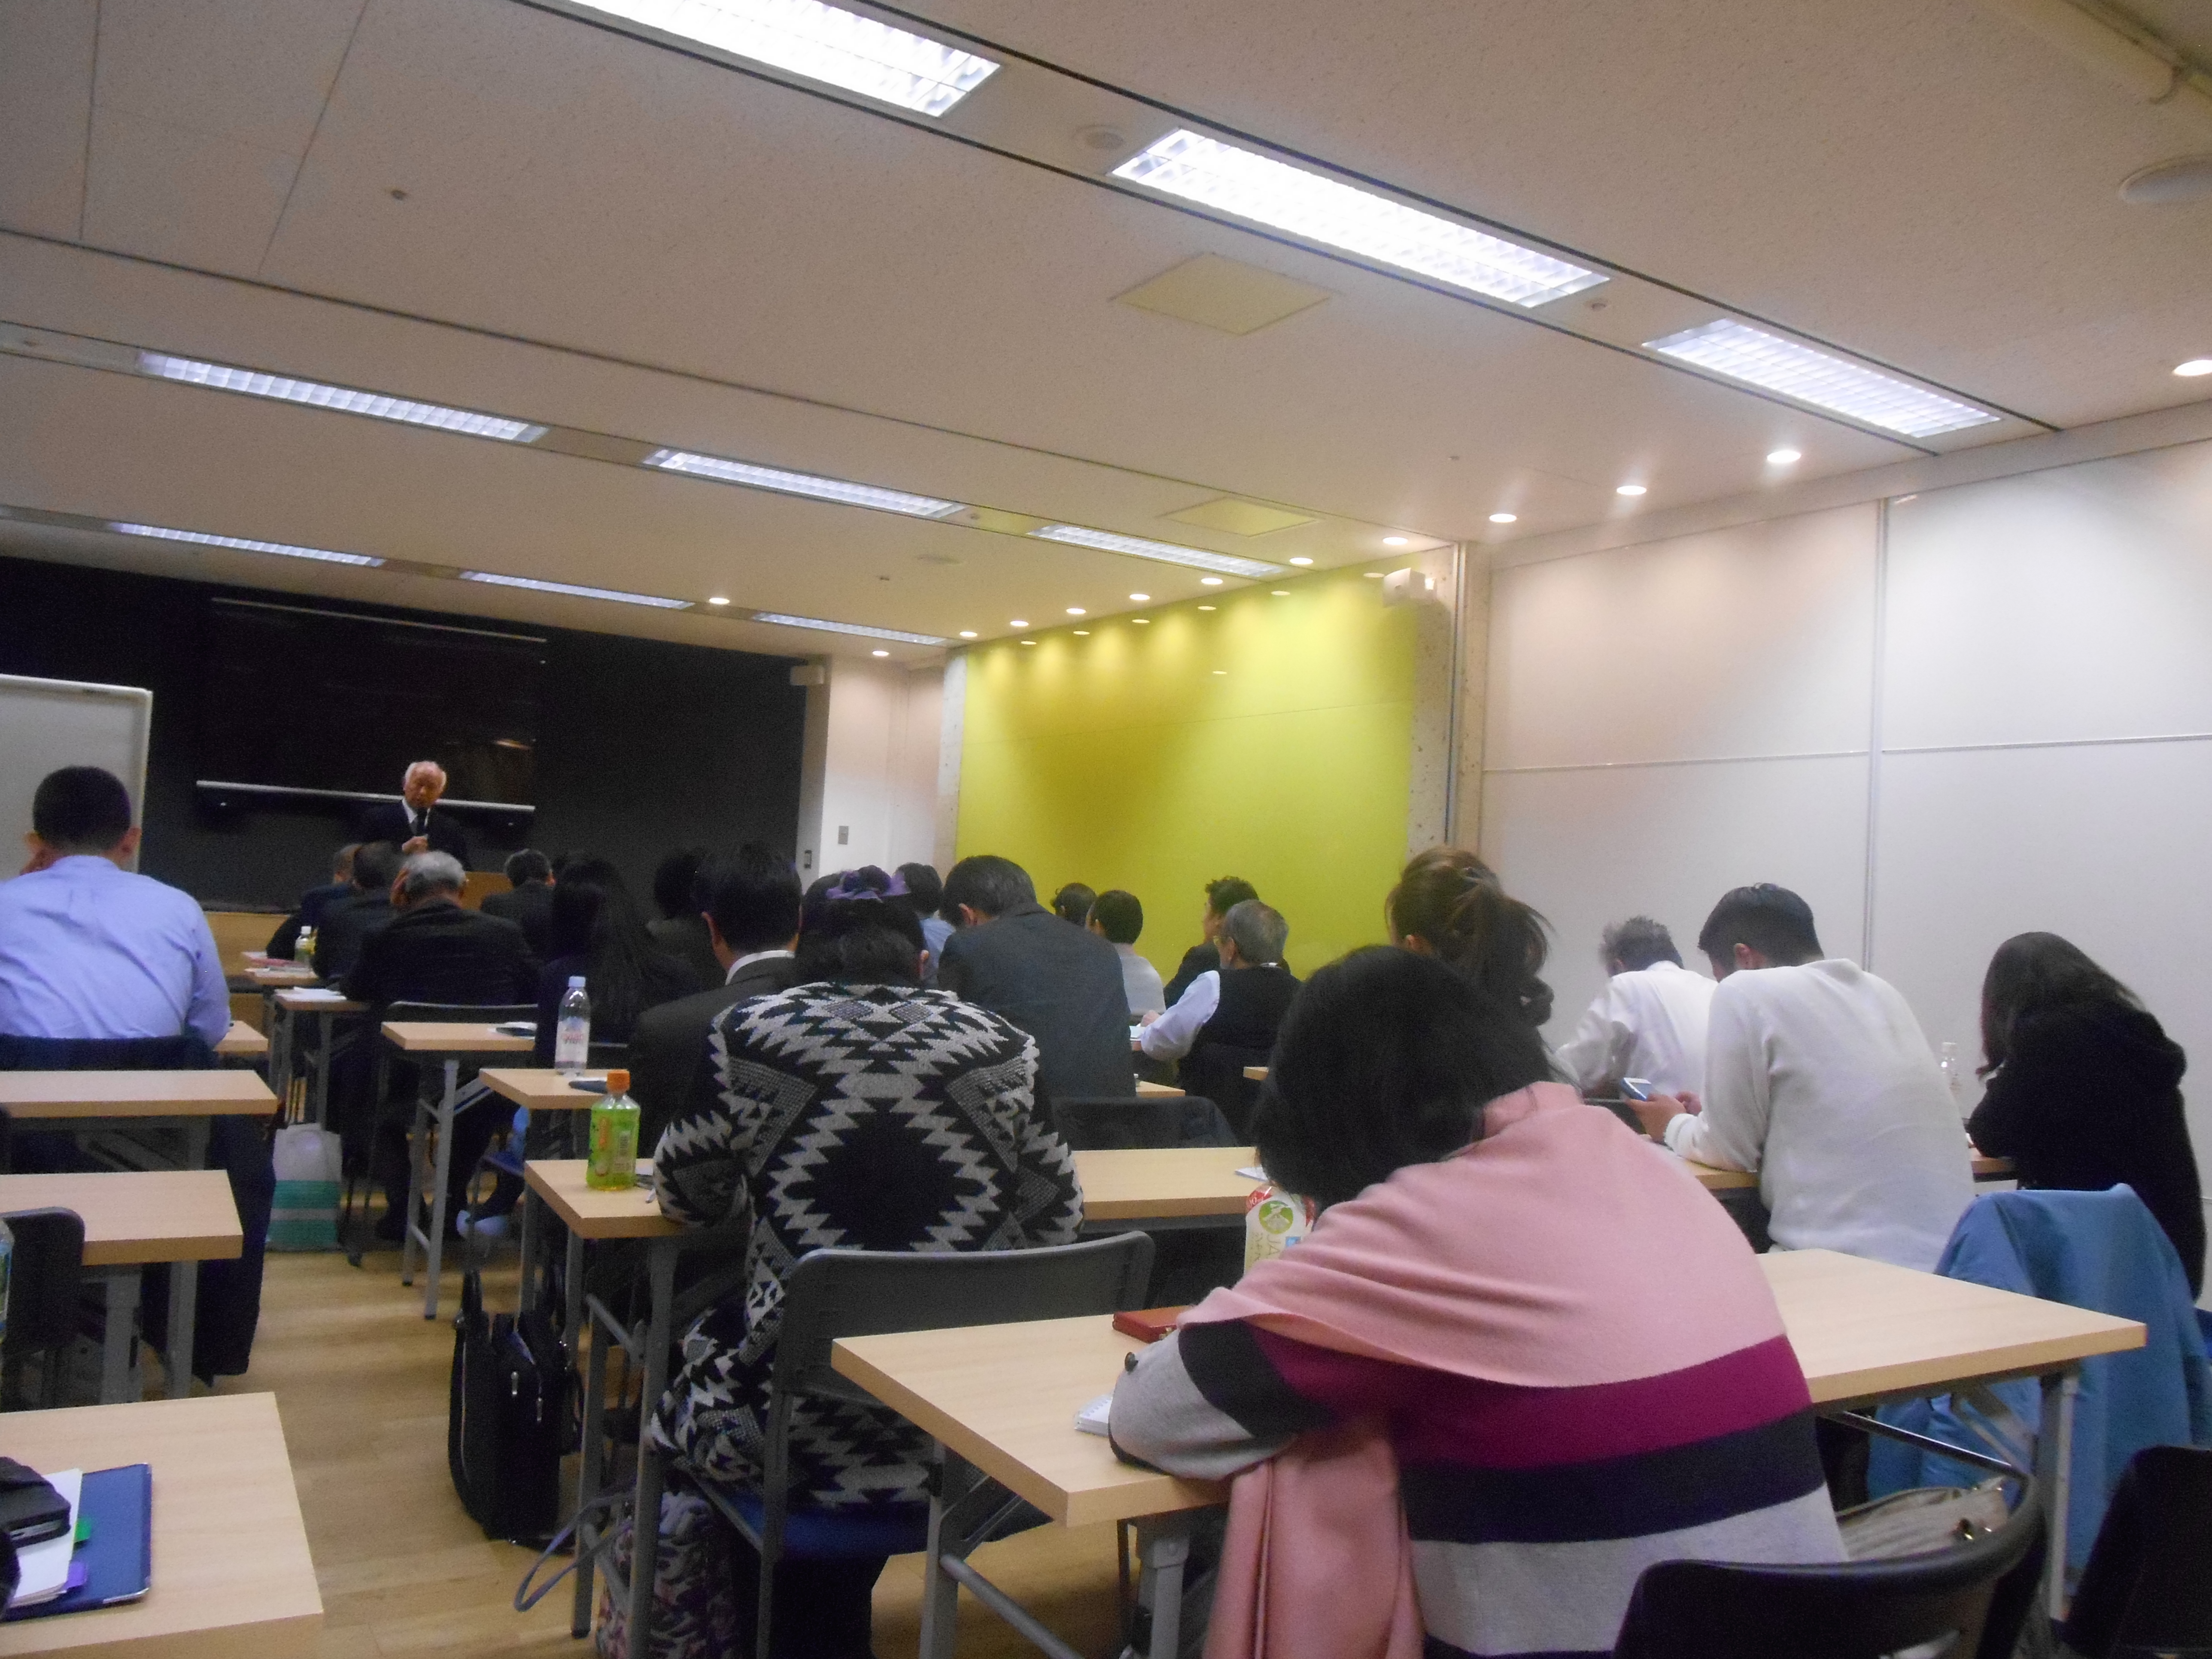 DSCN0057 - 平成29年度 東京思風塾2月4日開催しました。